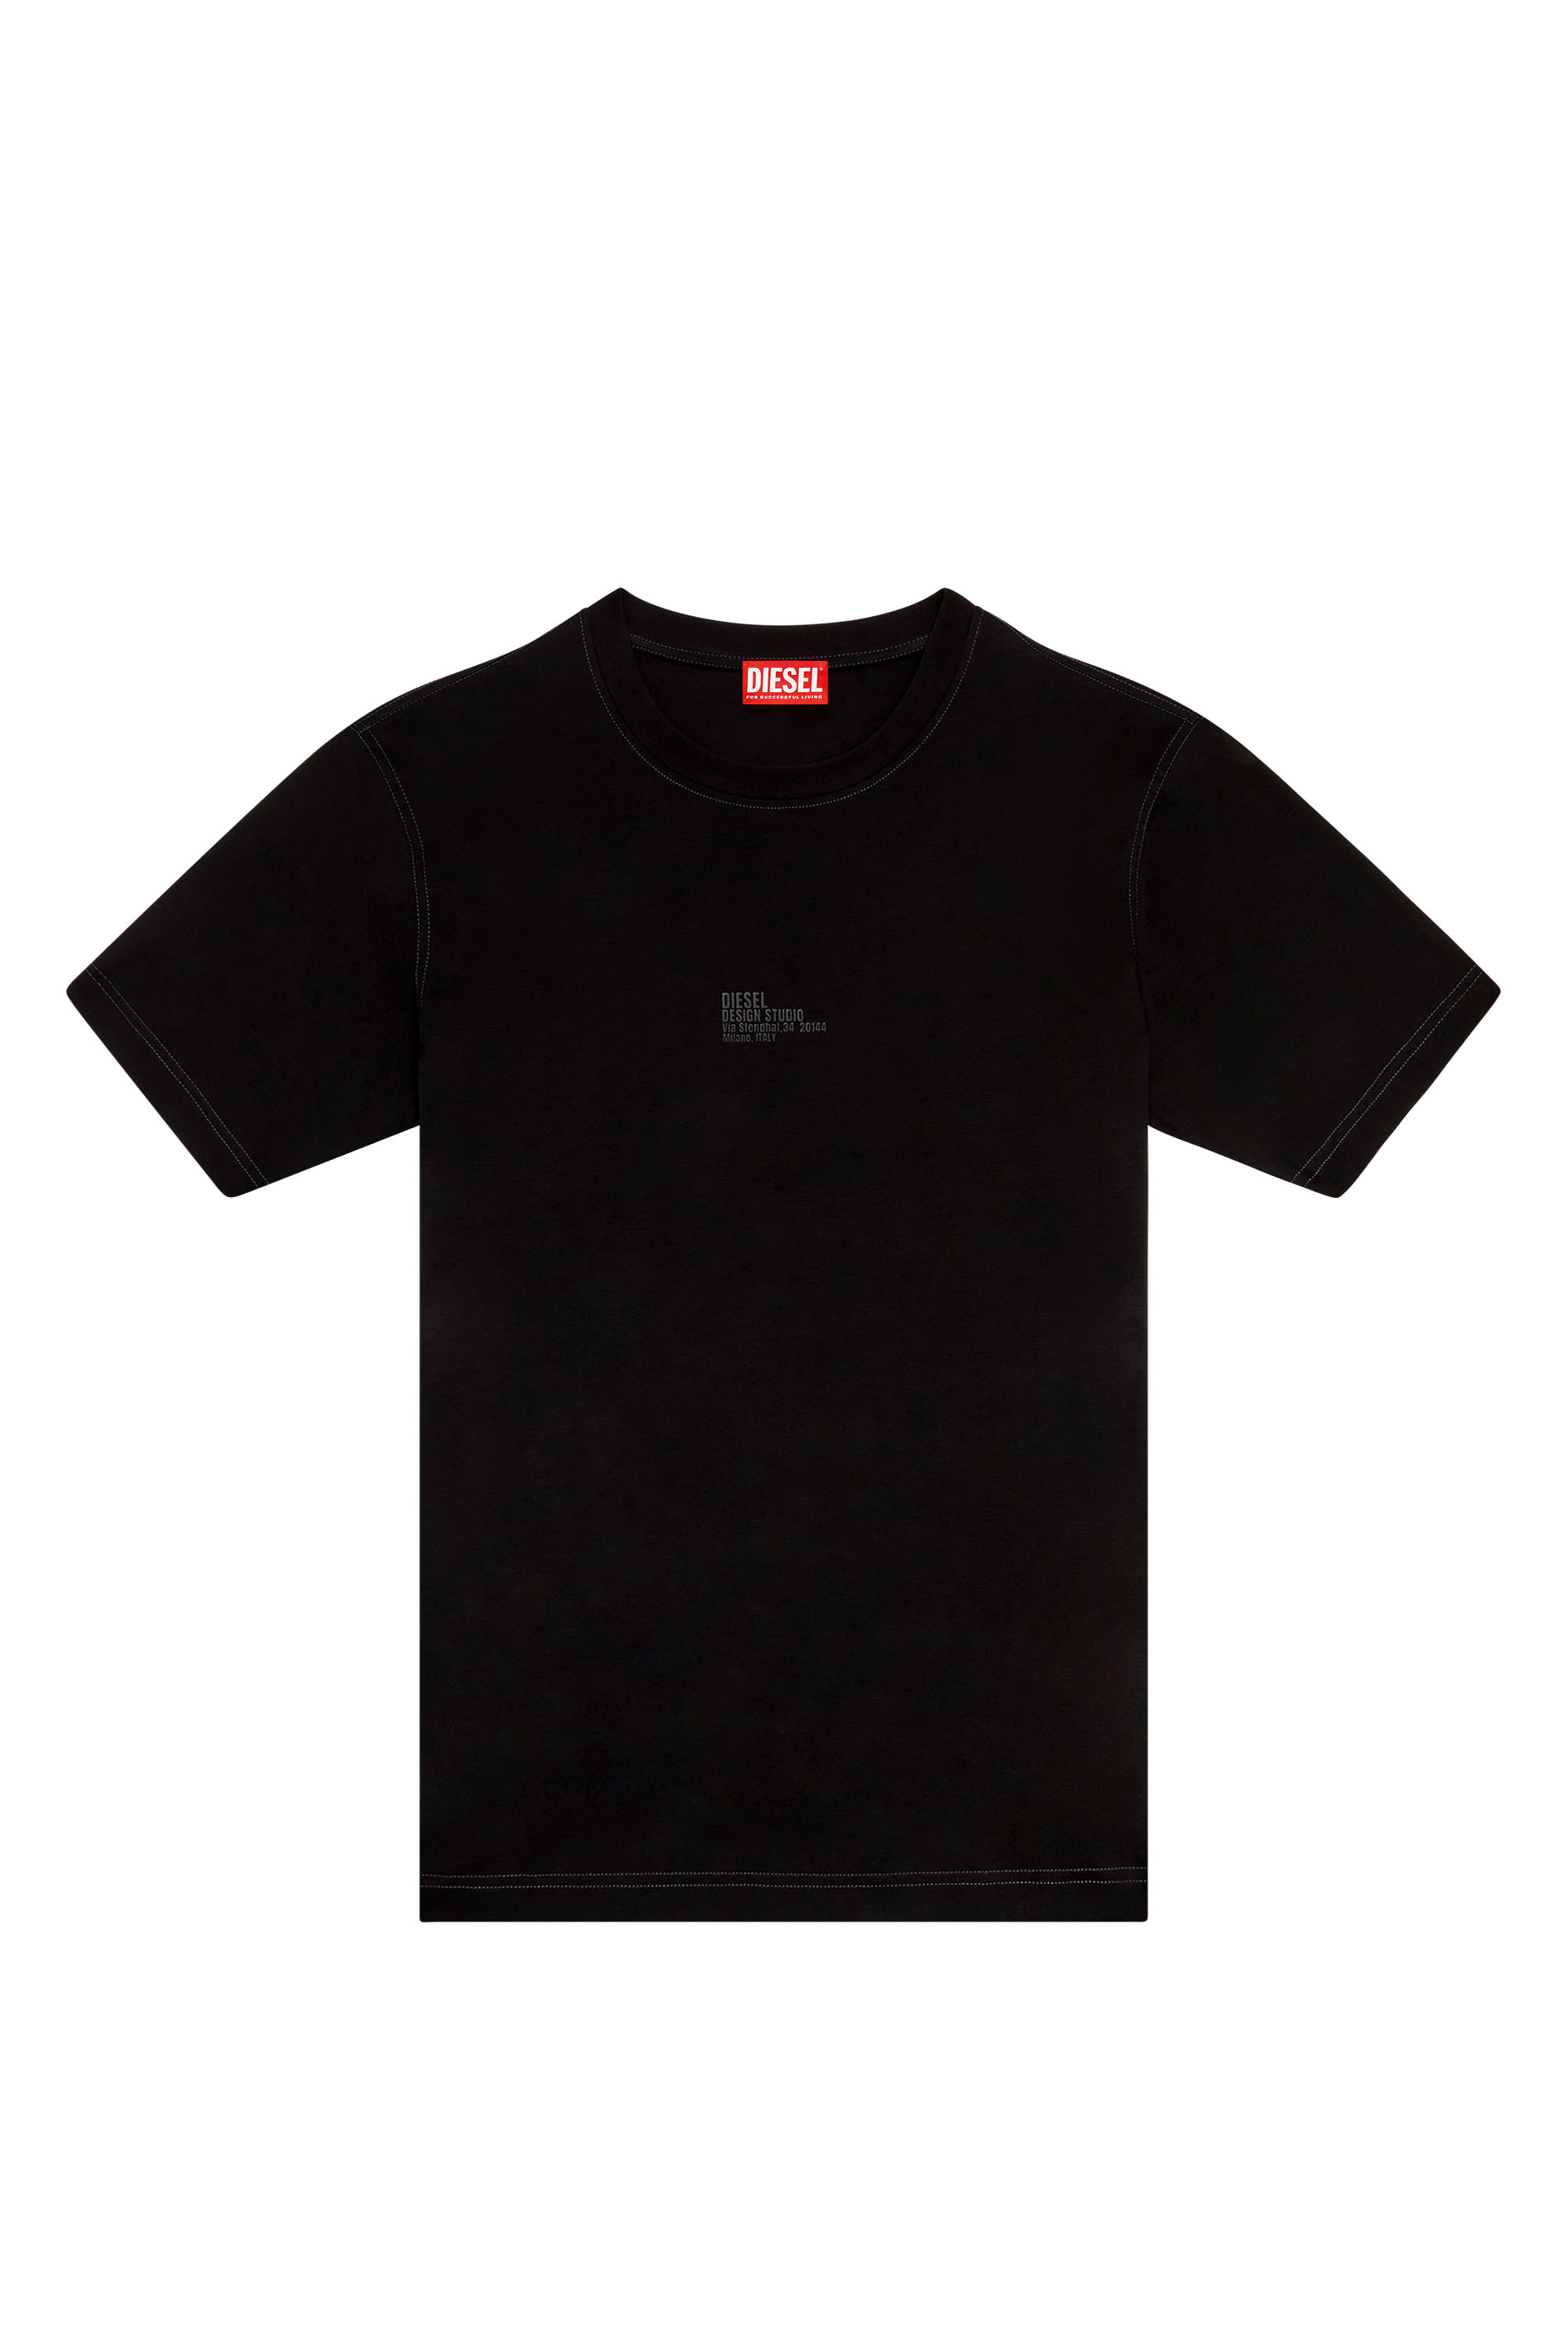 Diesel - T-MUST-SLITS-N2, Man T-shirt with Diesel Studio print in Black - Image 3